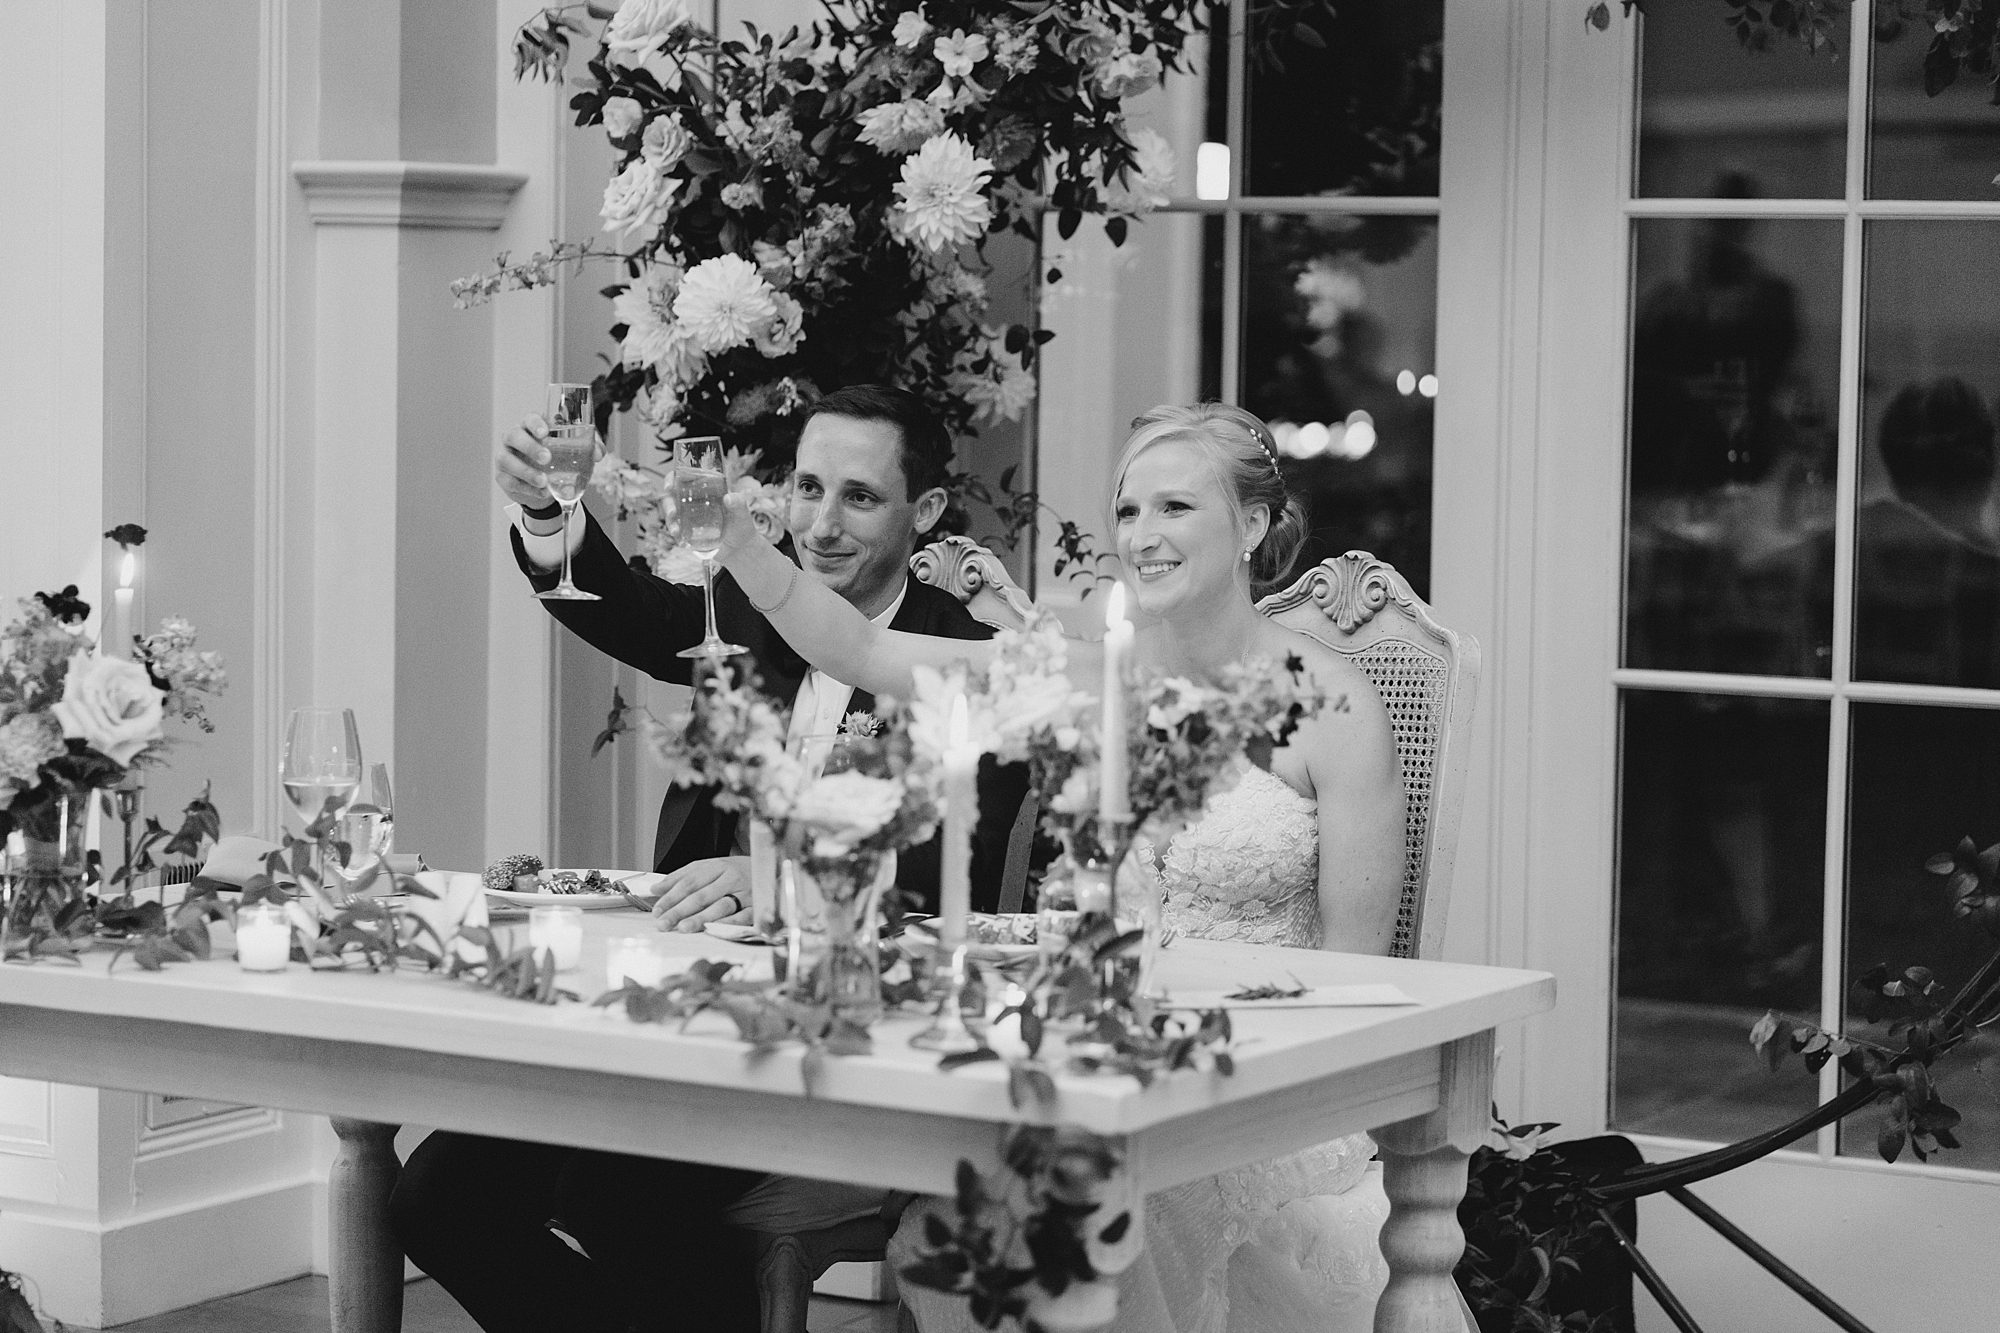 newlyweds toasting at wedding reception